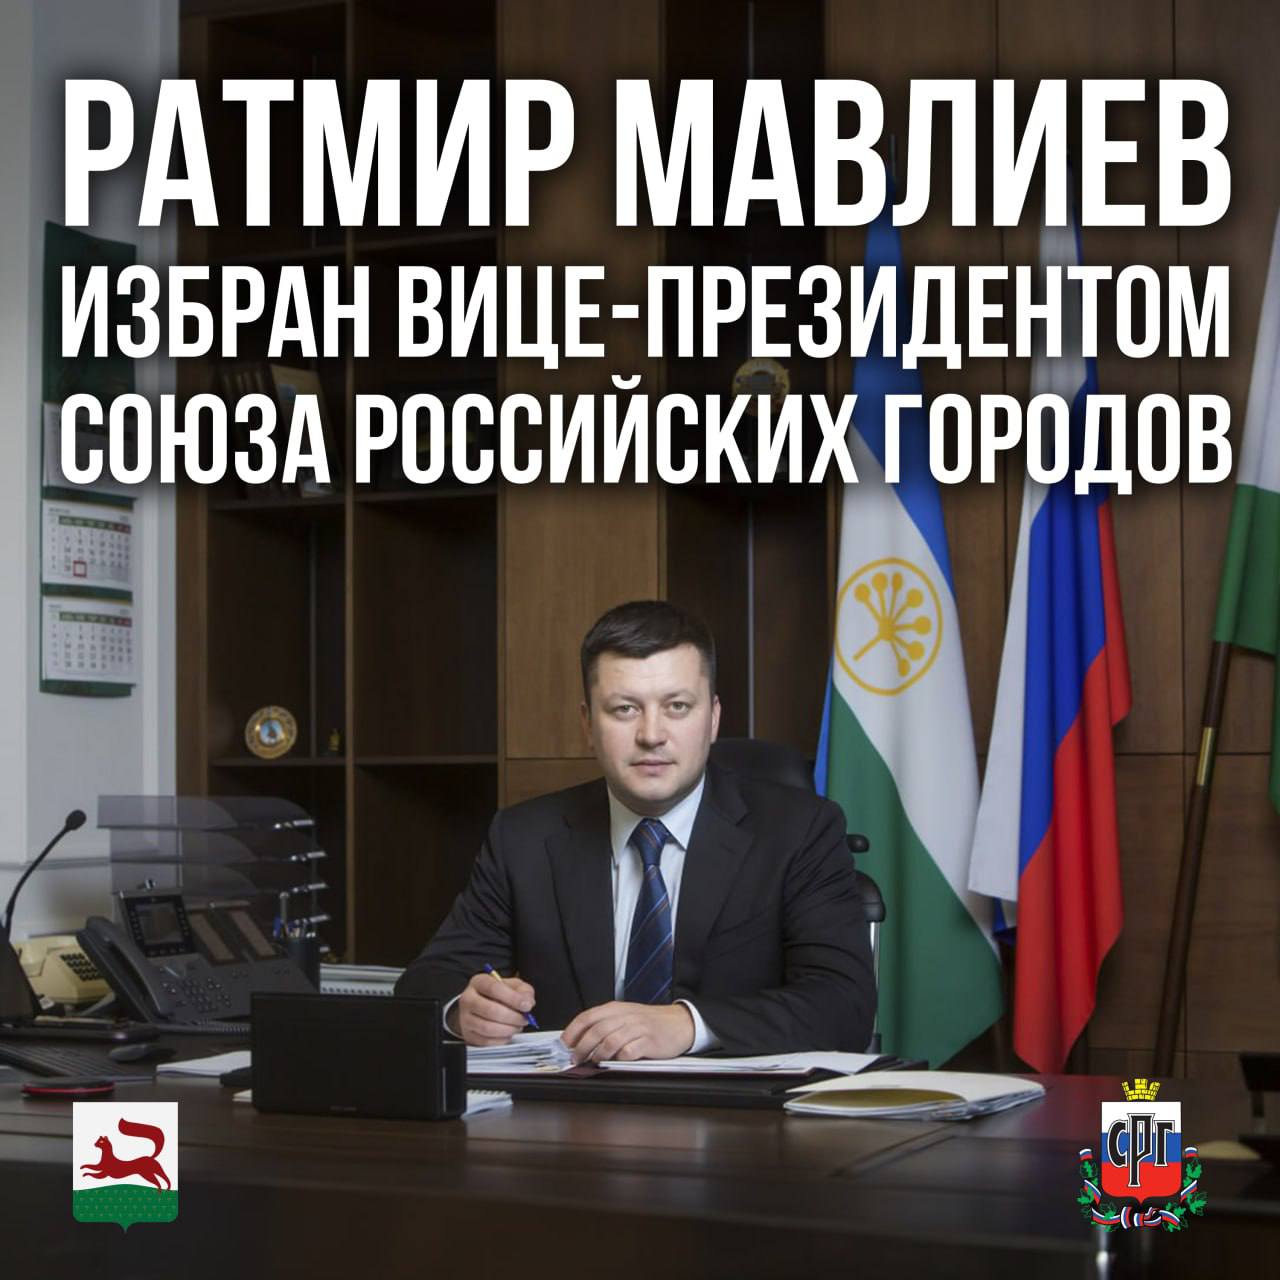 Мэр Уфы Ратмир Мавлиев стал вице-президентом Союза российских городов